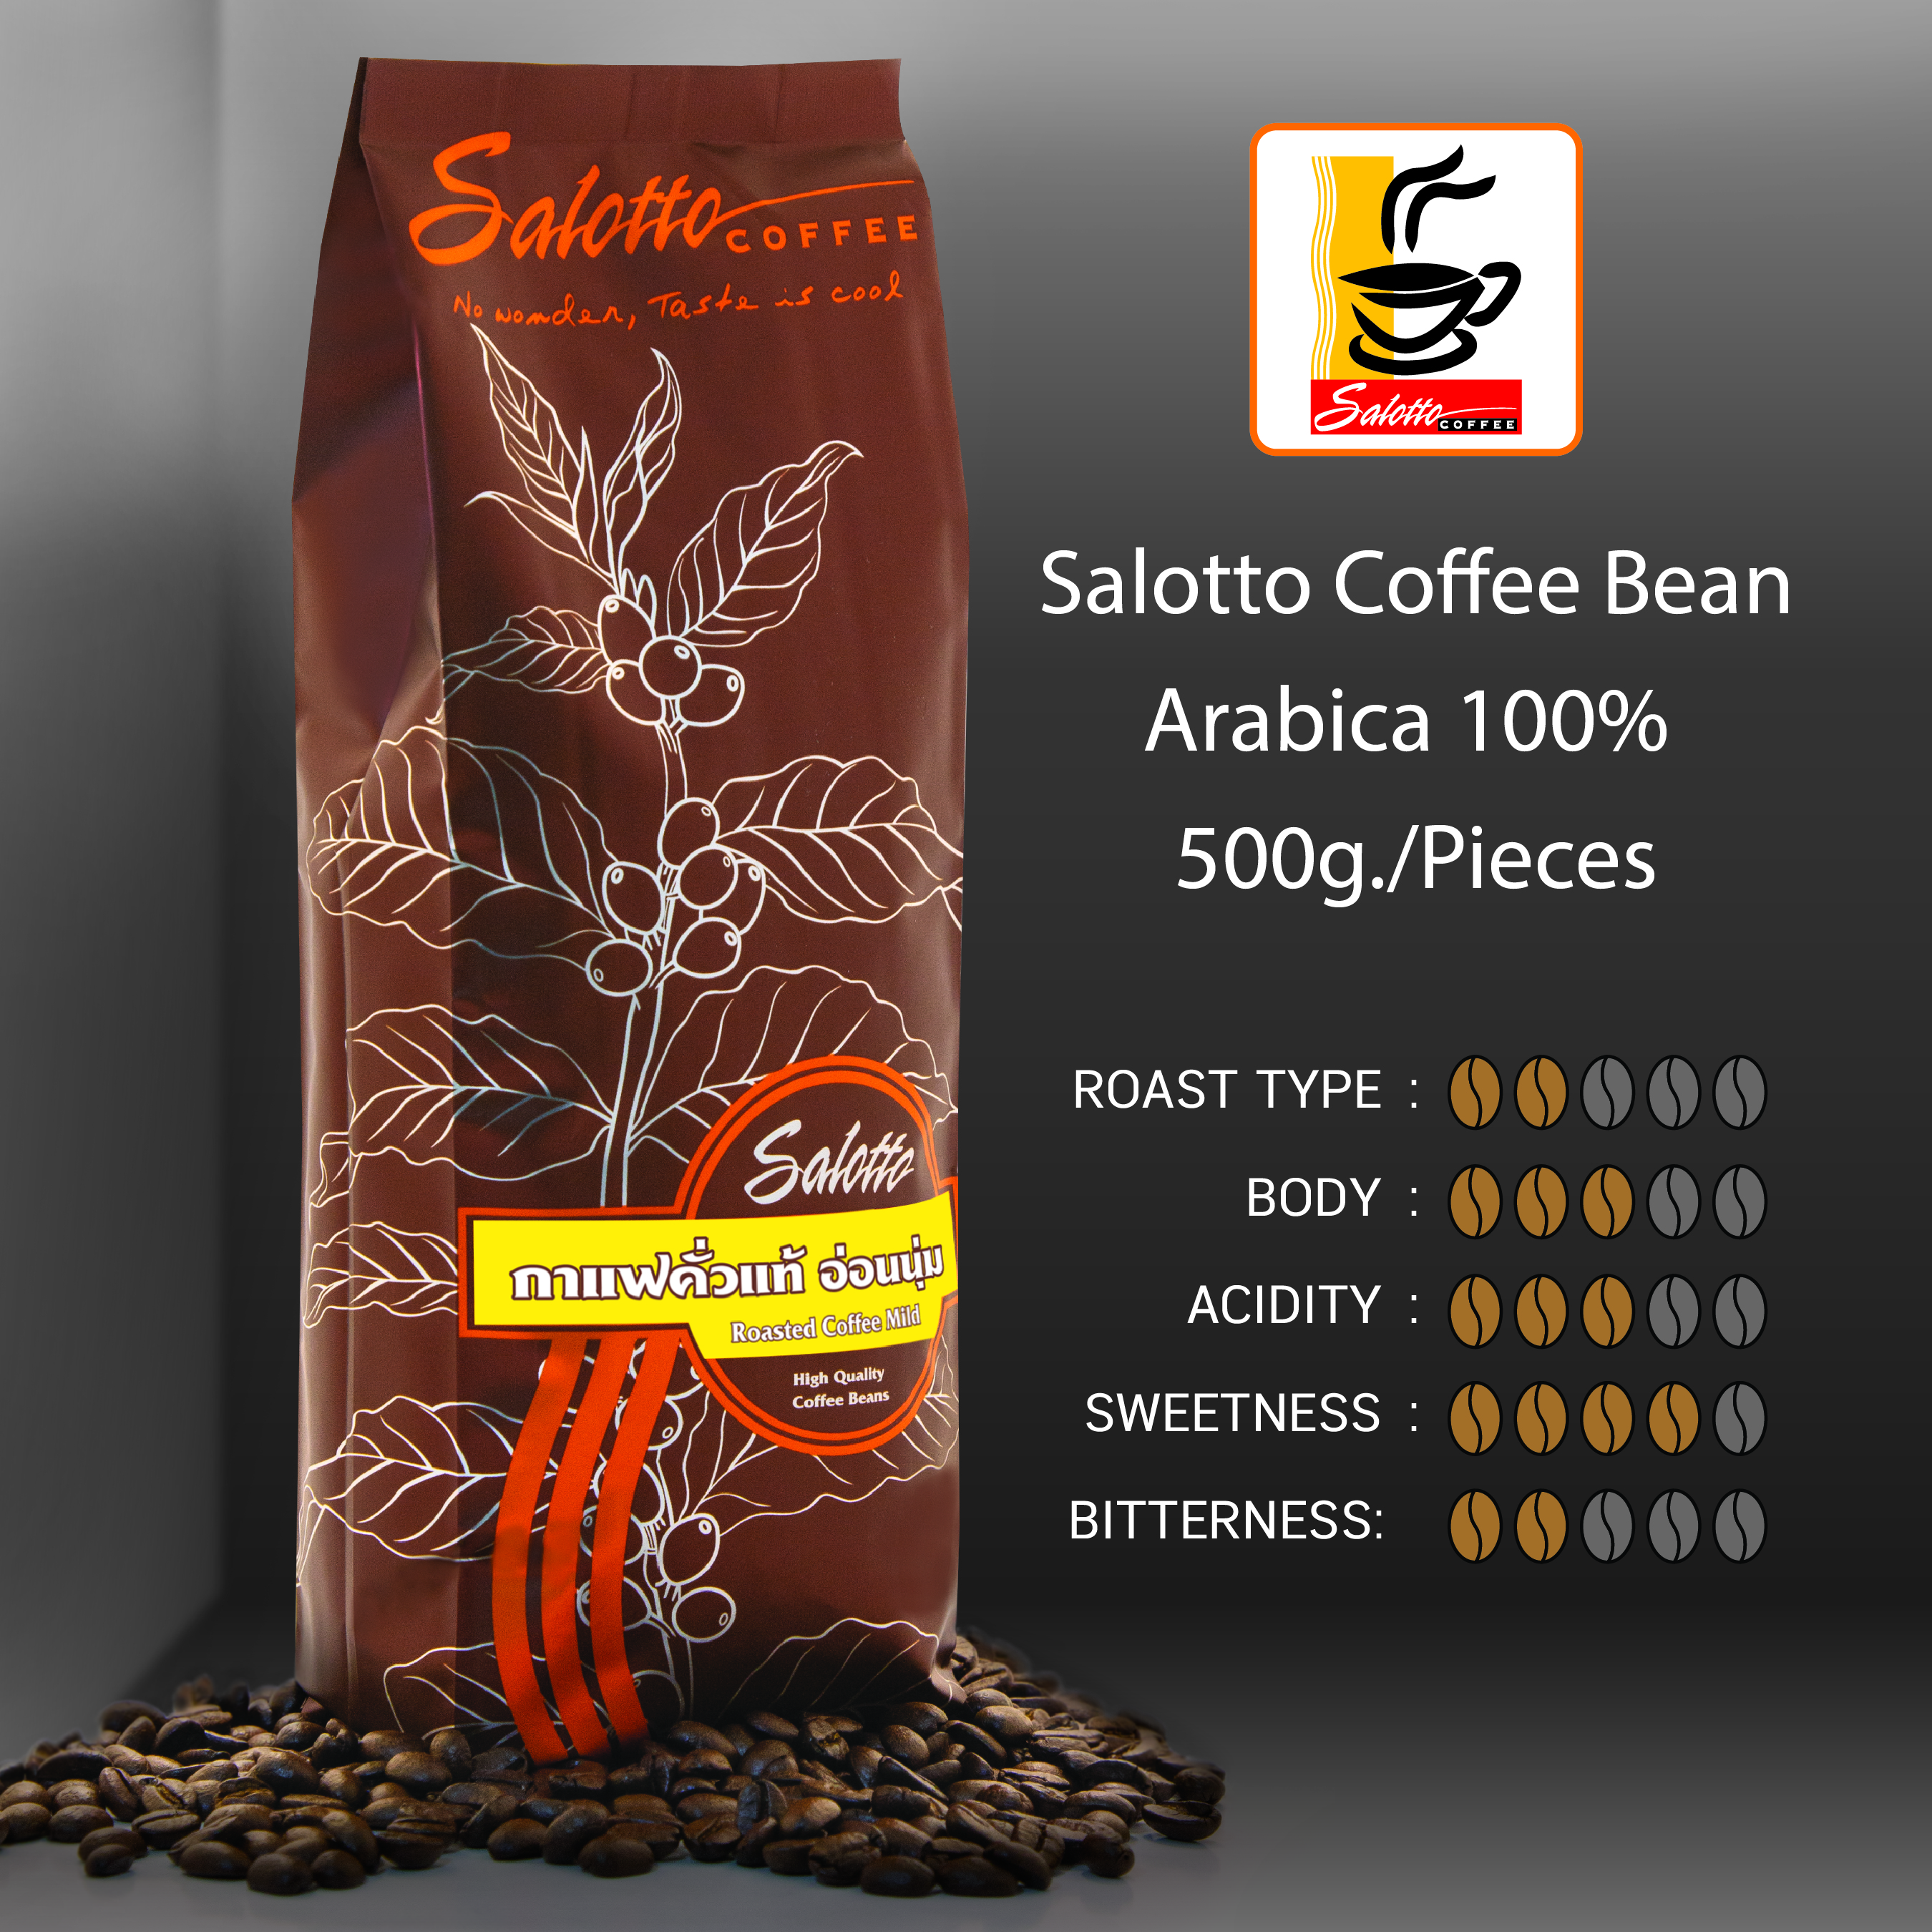 Salotto Coffee Bean Arabica 100%